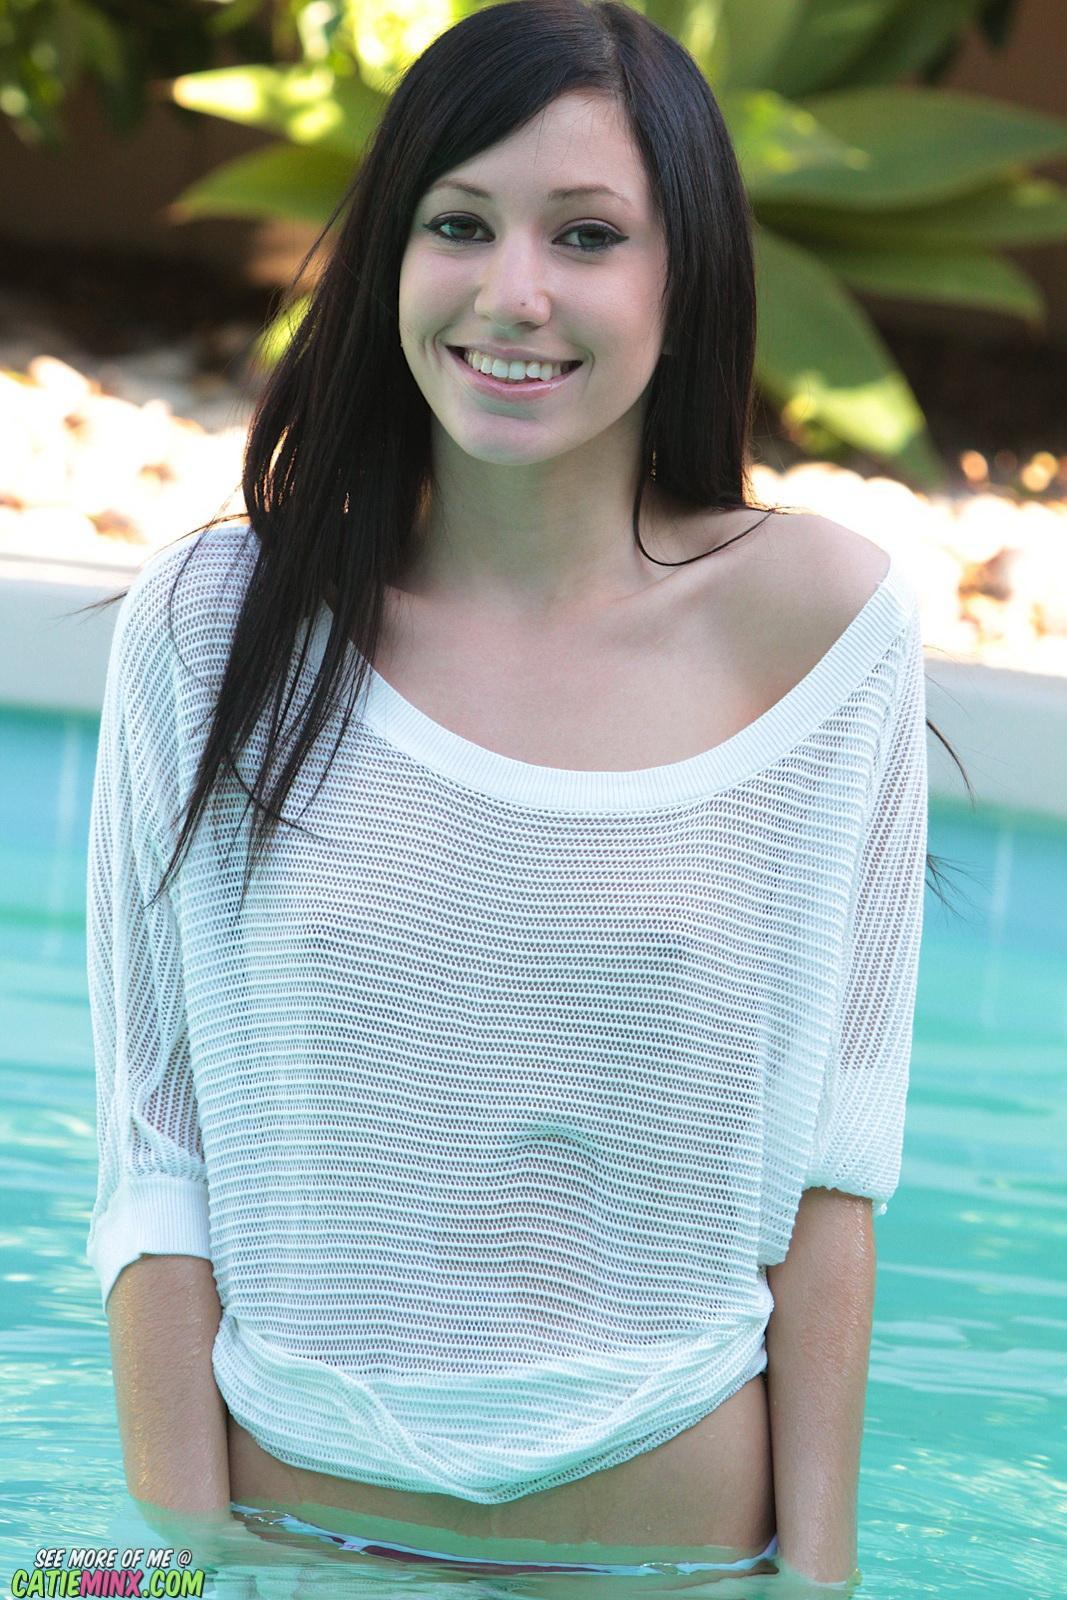 Catie minx è così trasparente mentre bagna il suo copricostume da piscina per mostrarti le sue belle tette
 #53721055